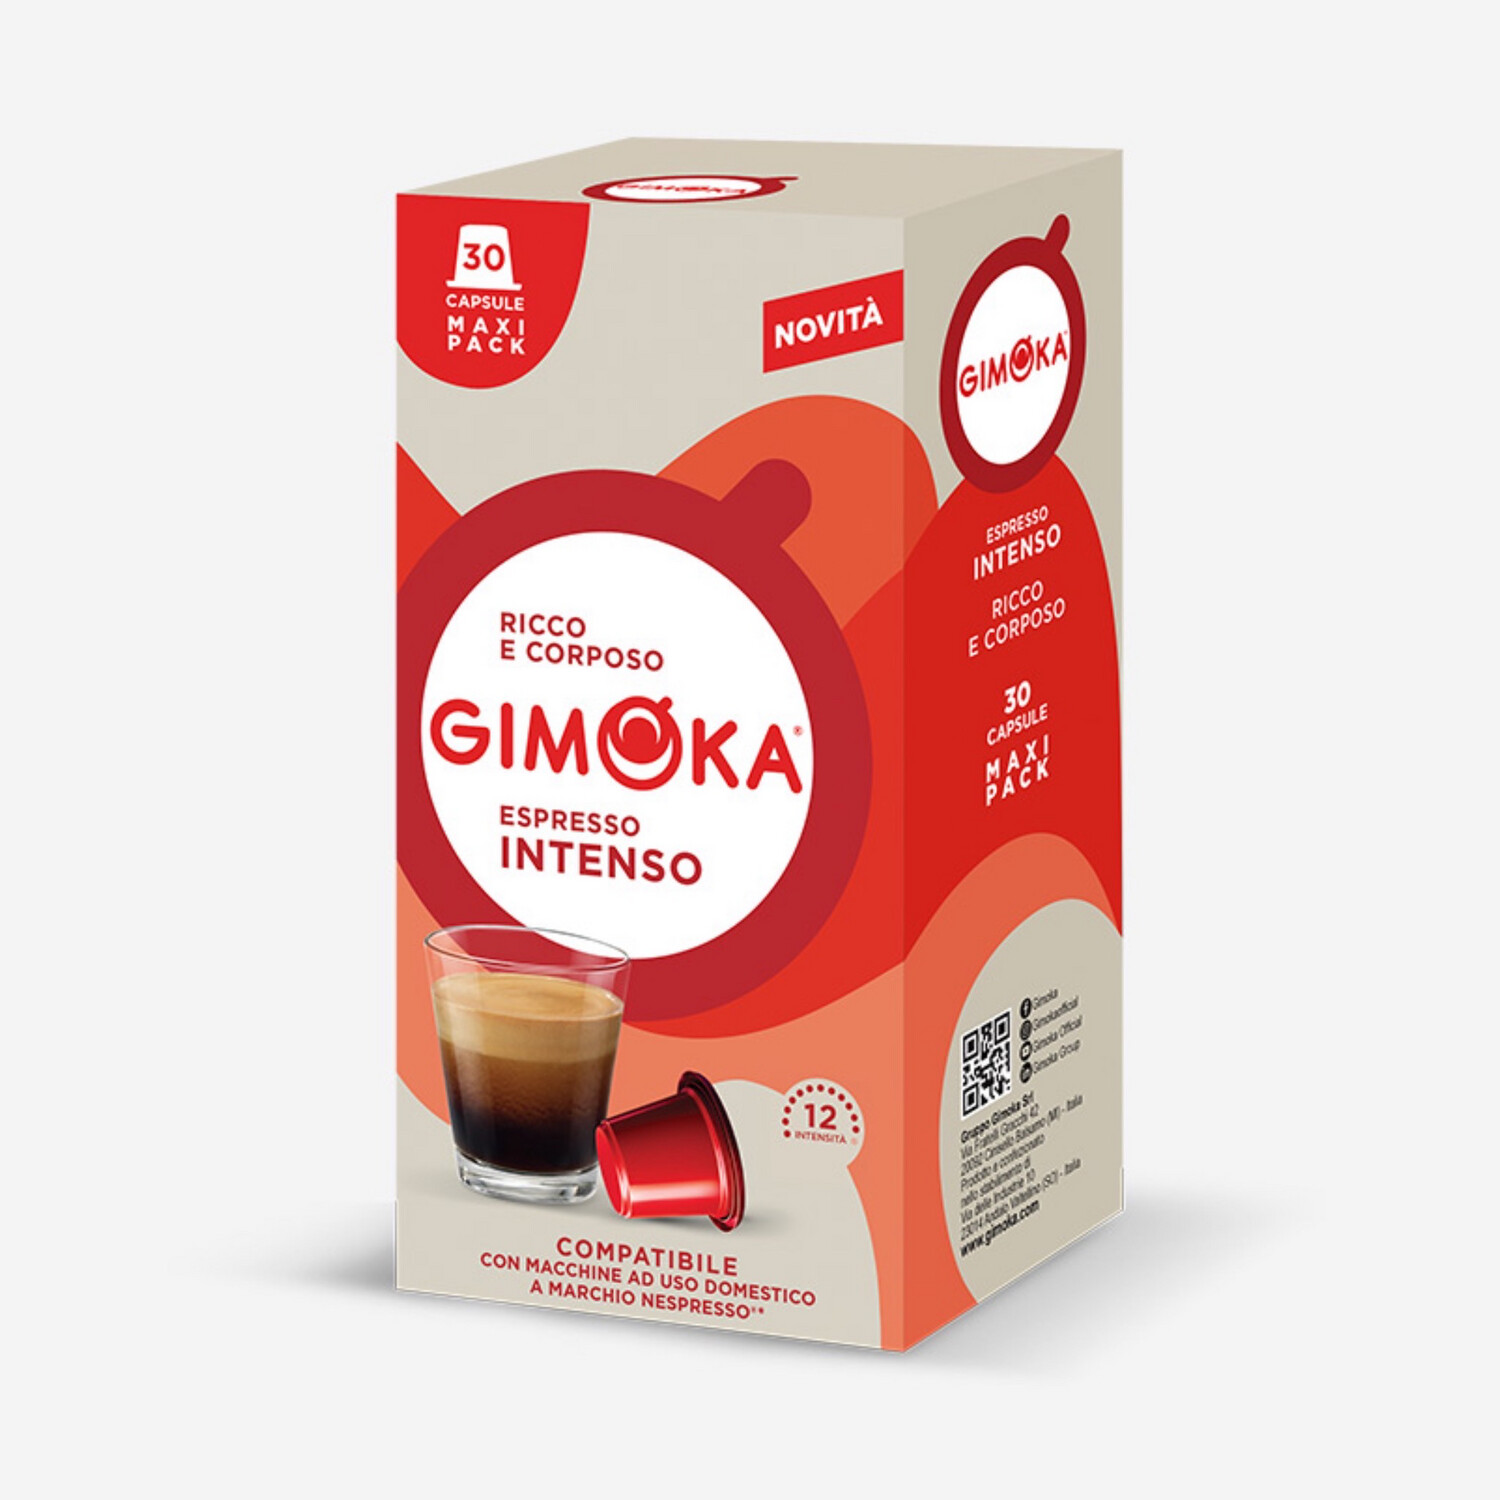 Gimoka Nespresso Intenso Family pack espresso x30 капсули